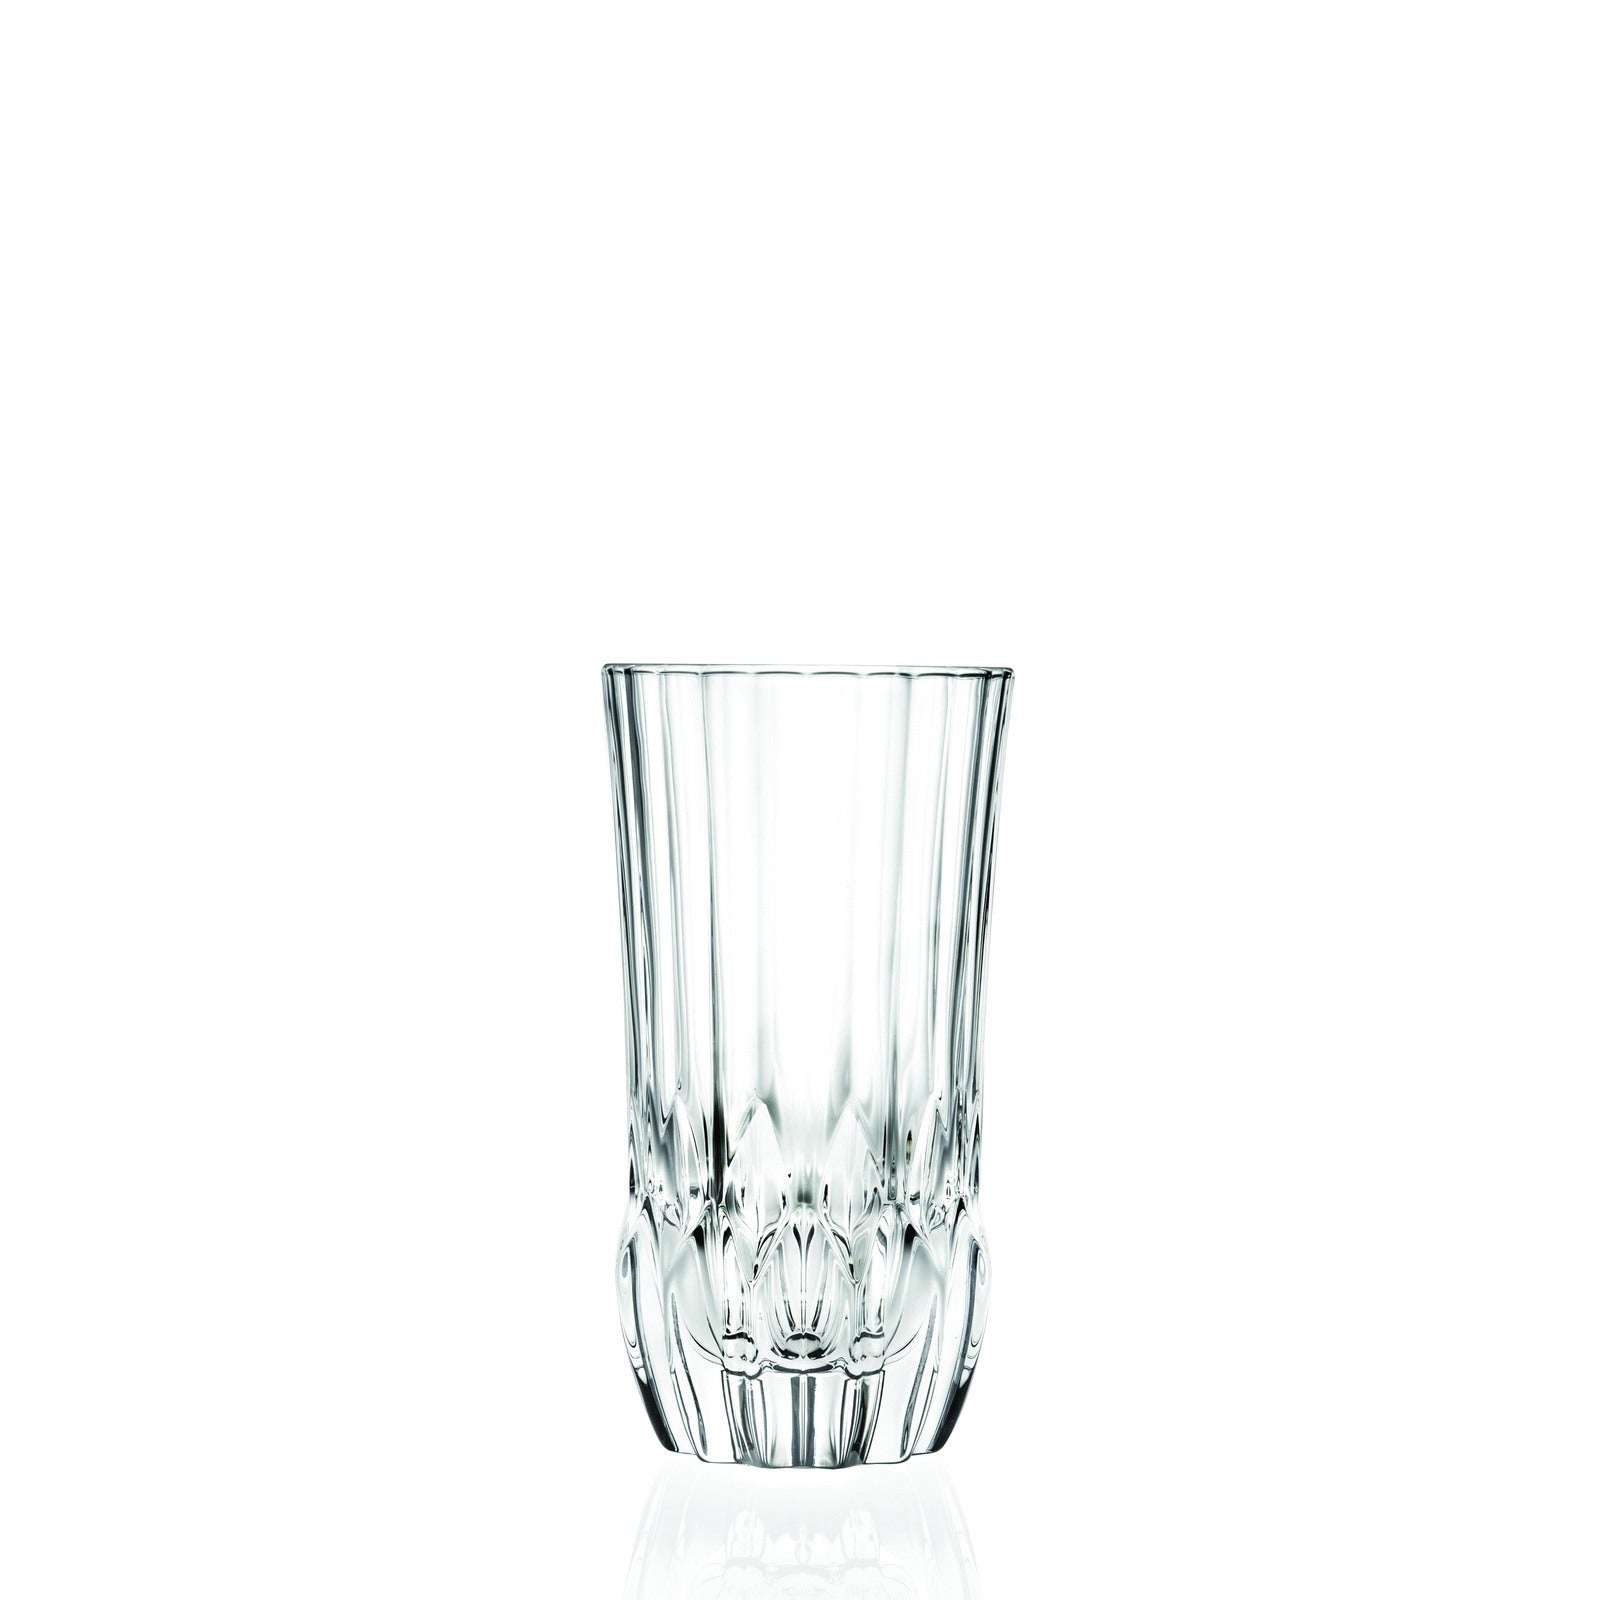 immagine-1-rcr-cristalleria-italiana-adagio-hb-set-da-6-bicchieri-long-drink-in-vetro